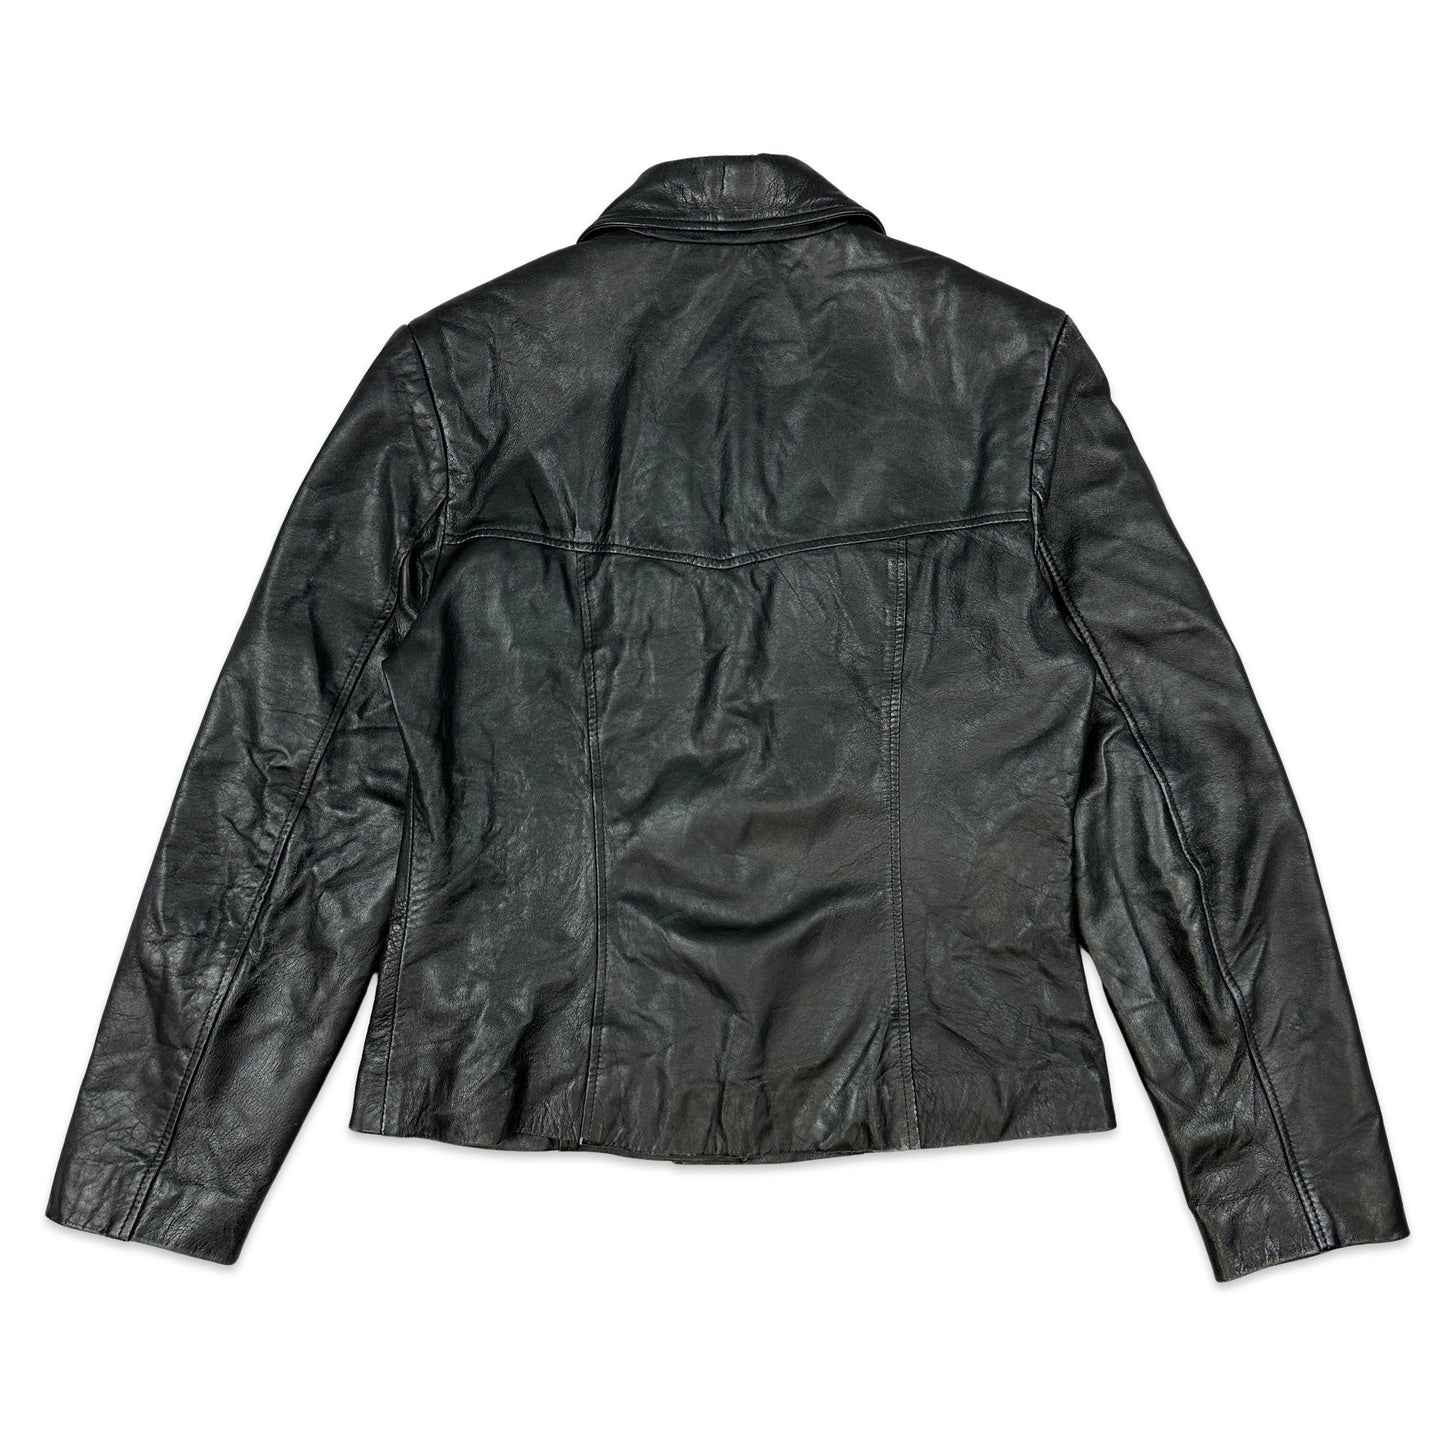 SVintage Black Leather Jacket 12